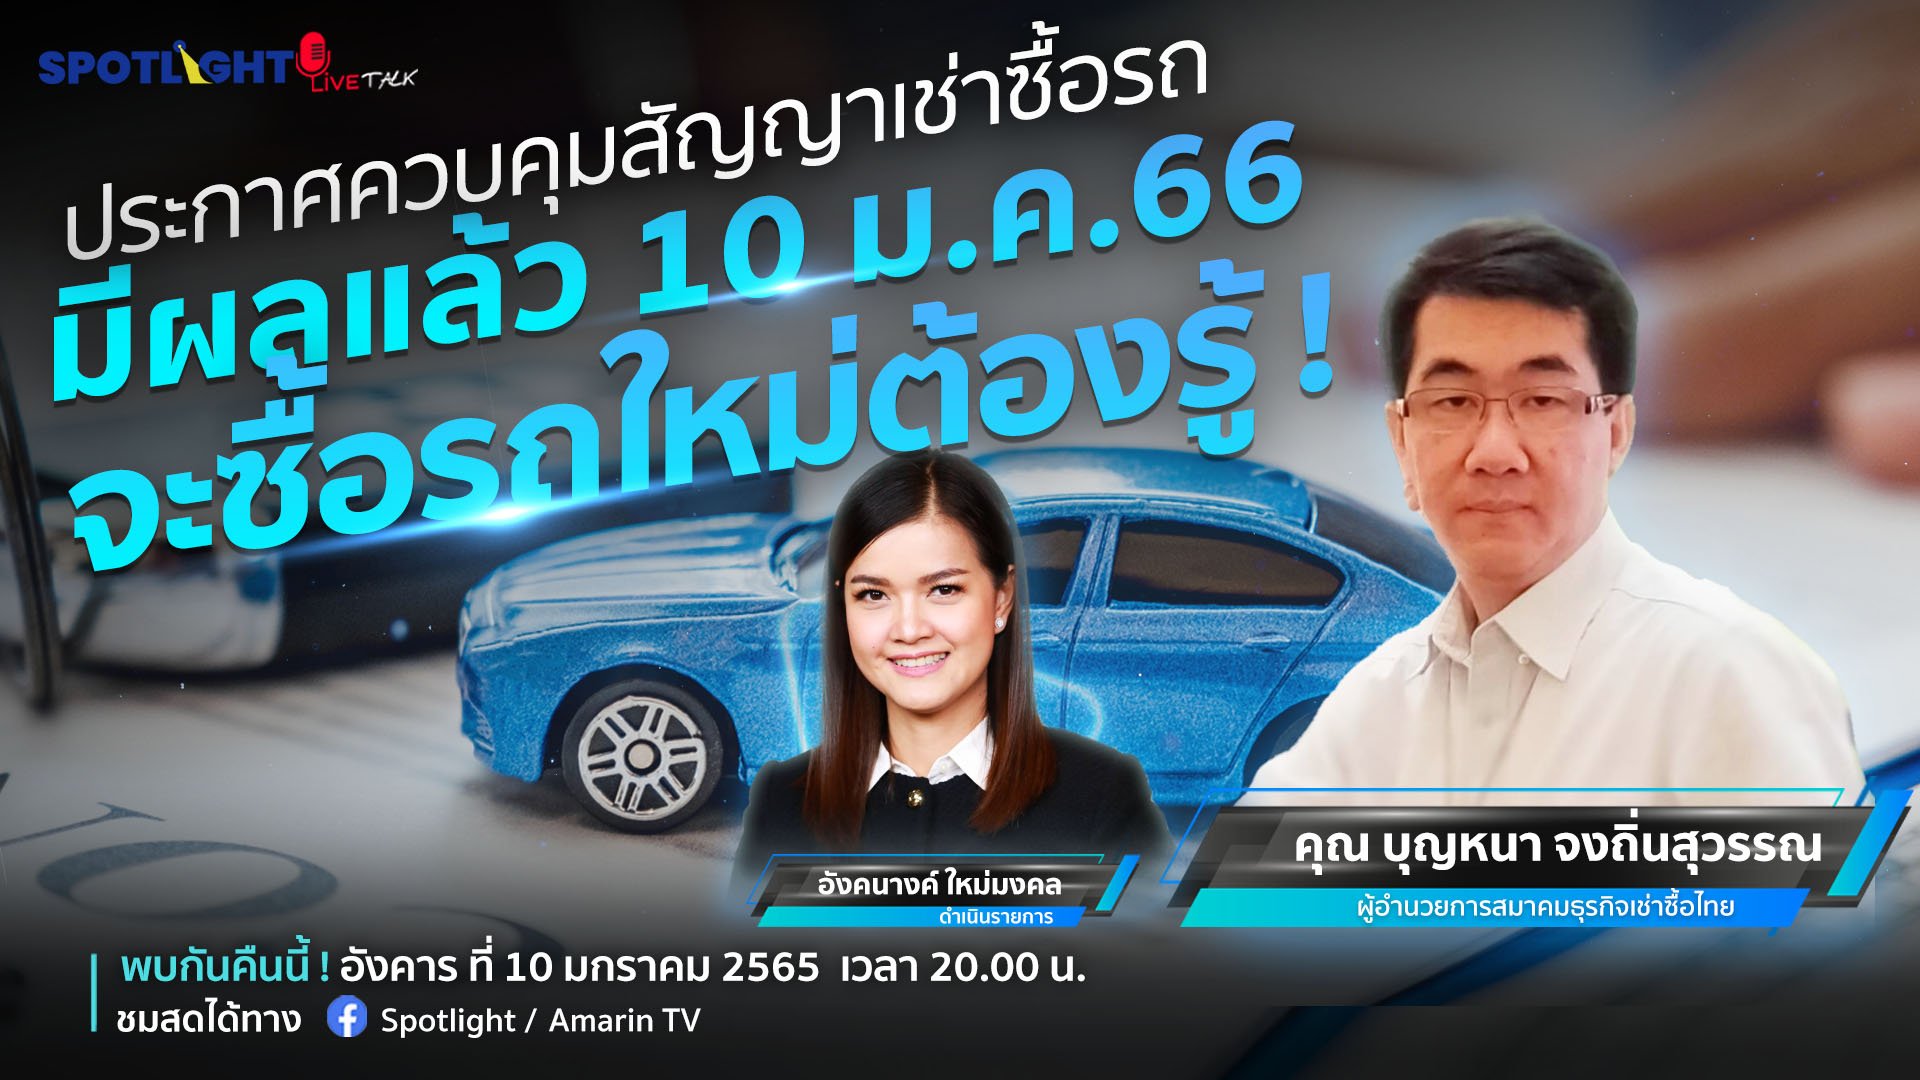 ประกาศควบคุมสัญญาเช่าซื้อรถมีผลแล้ว 10 ม.ค.66 จะซื้อรถใหม่ต้องรู้ ! | Spotlight | 11 ม.ค. 66 | AMARIN TVHD34